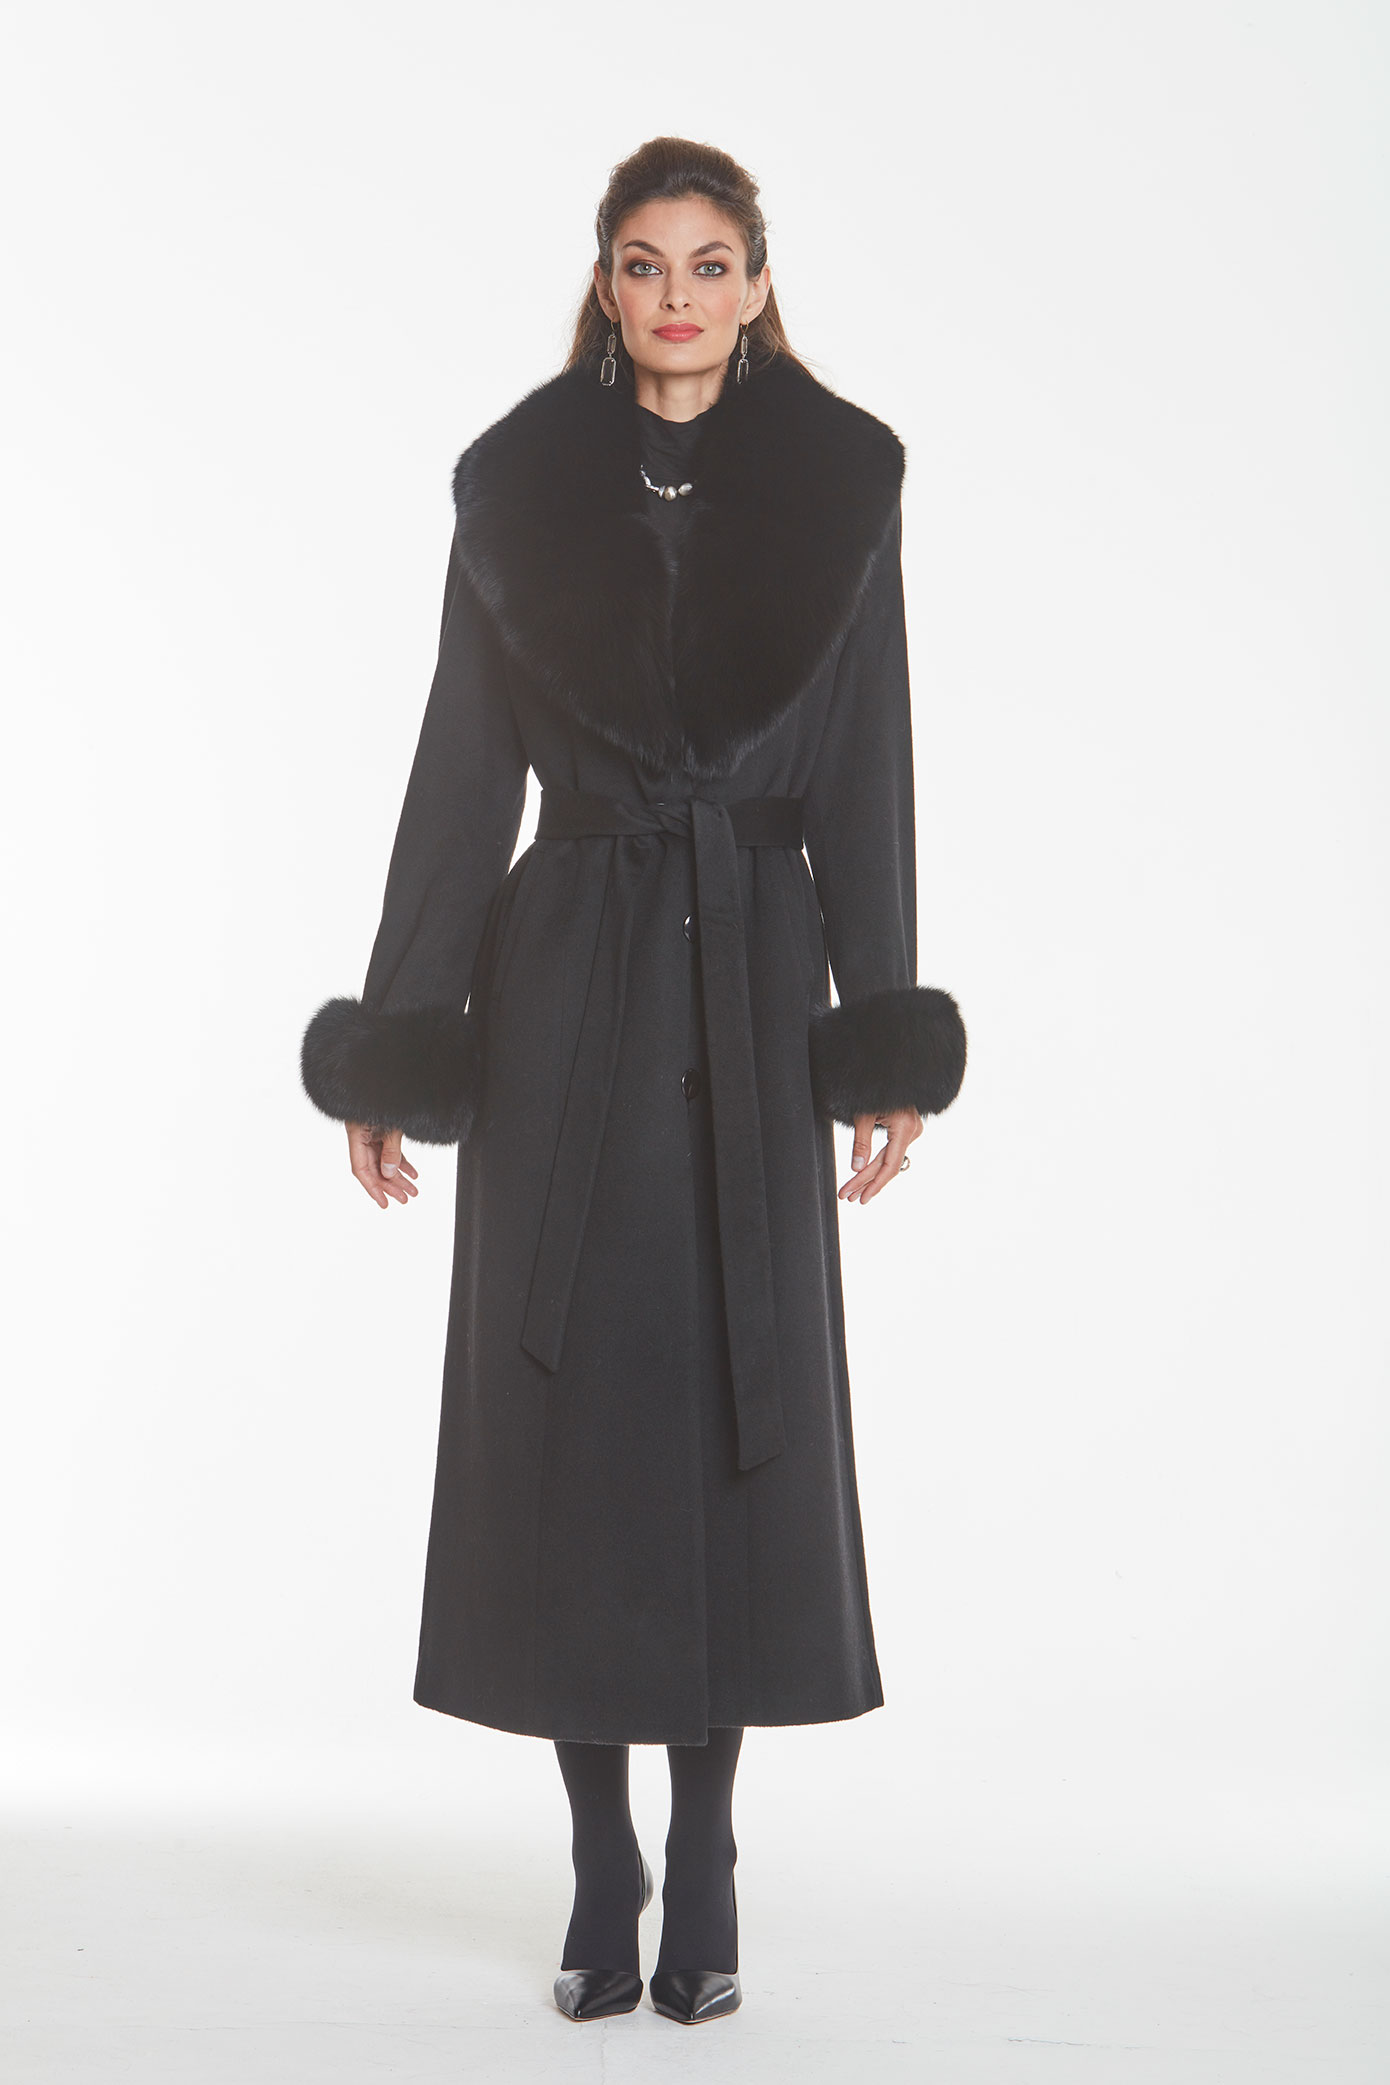 Cashmere Coat â Black Fox Trim | Madison Avenue Mall Furs